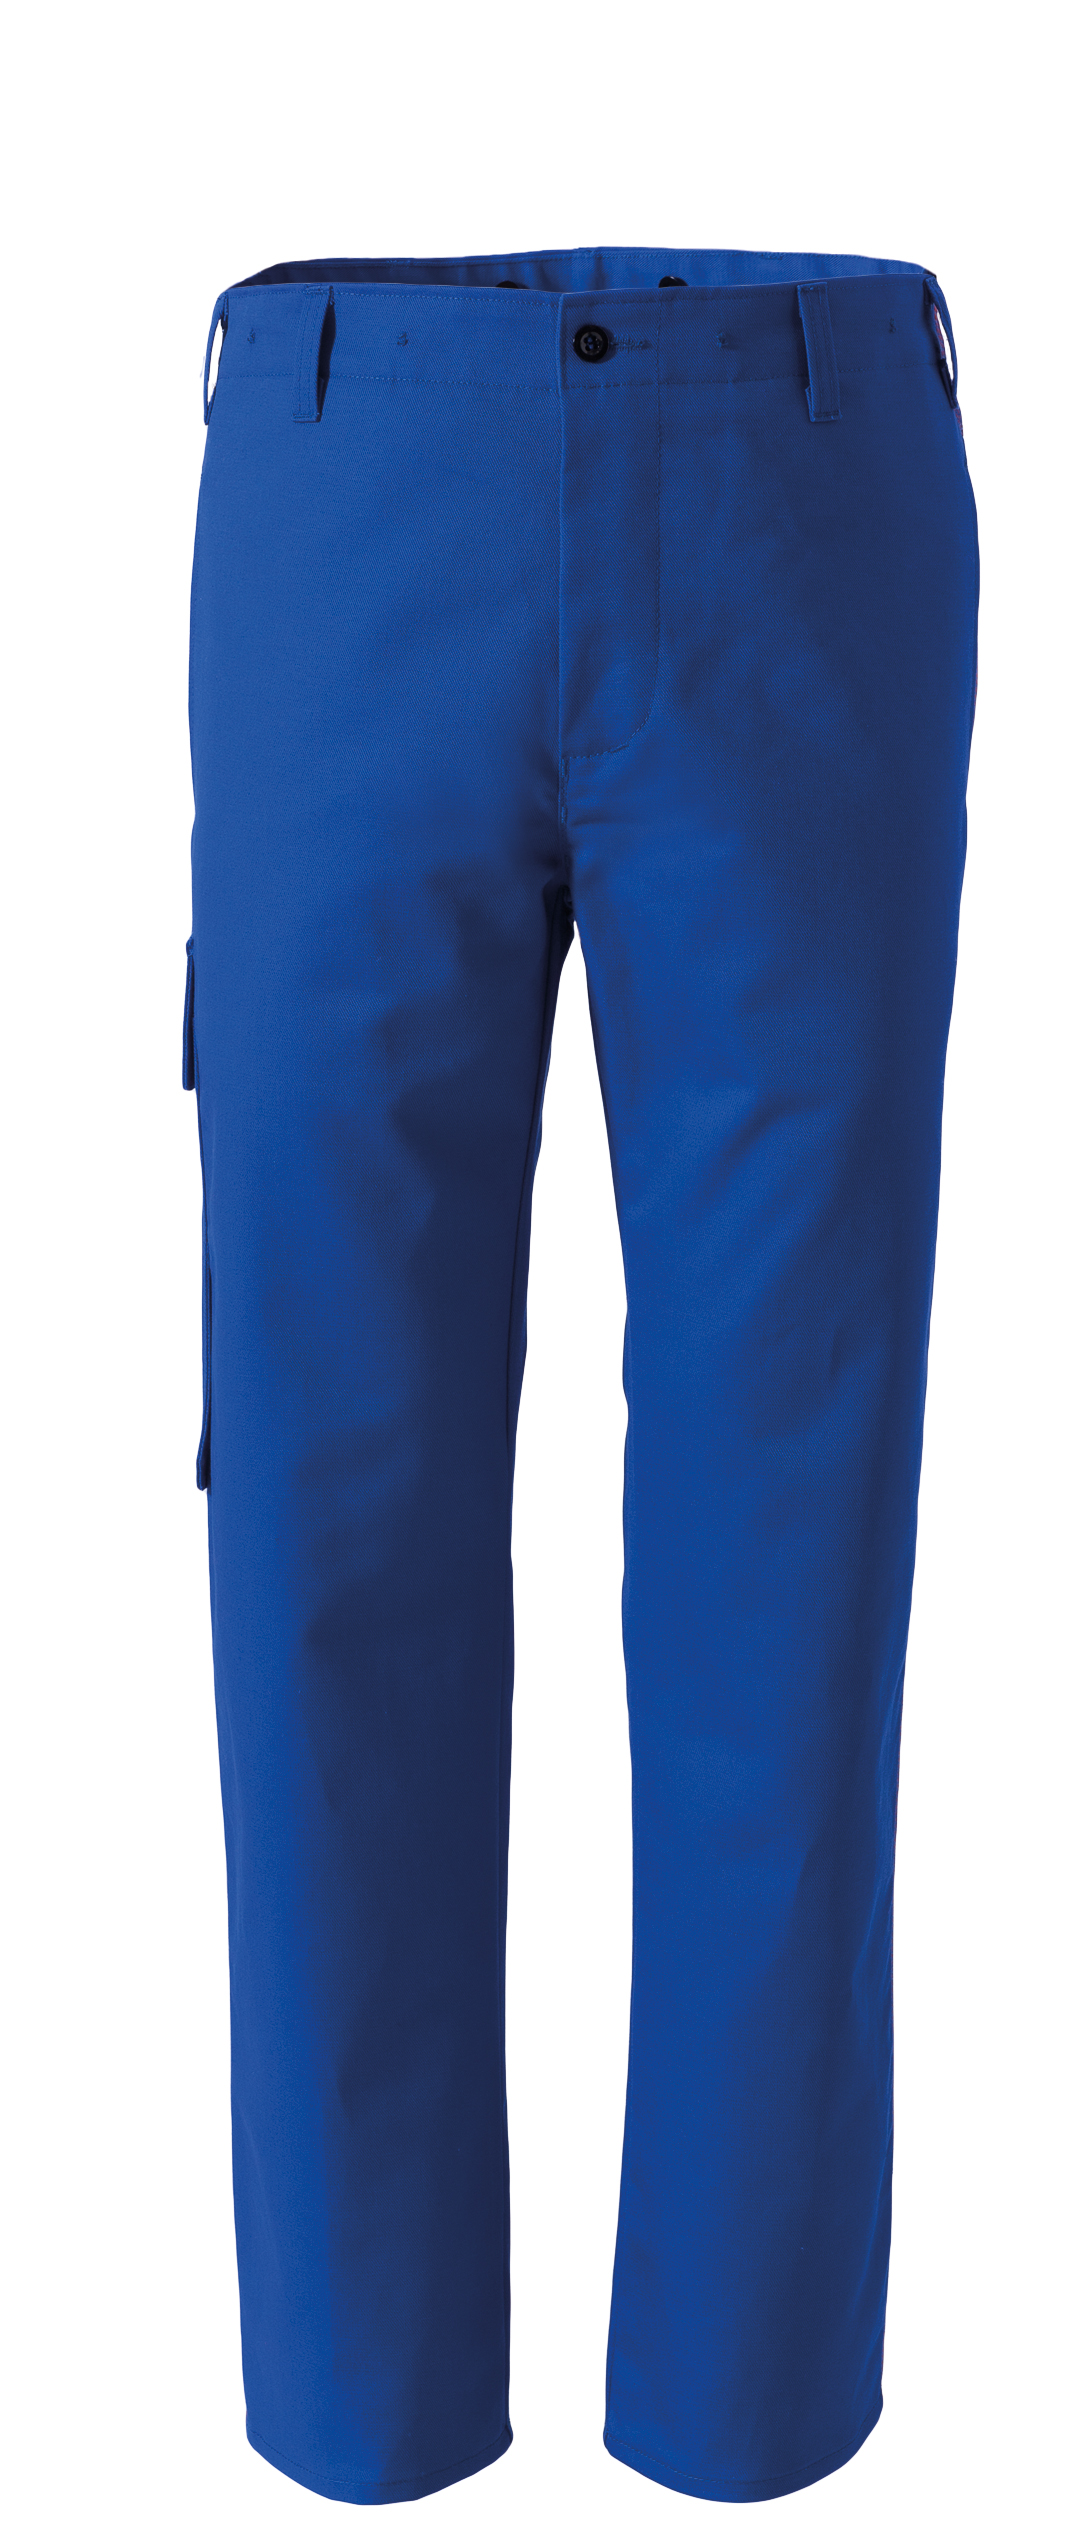 ROFA Schweißerschutzhose Arbeitshose Schutzhose Schweißerkleidung Proban kornblau ca 330 g